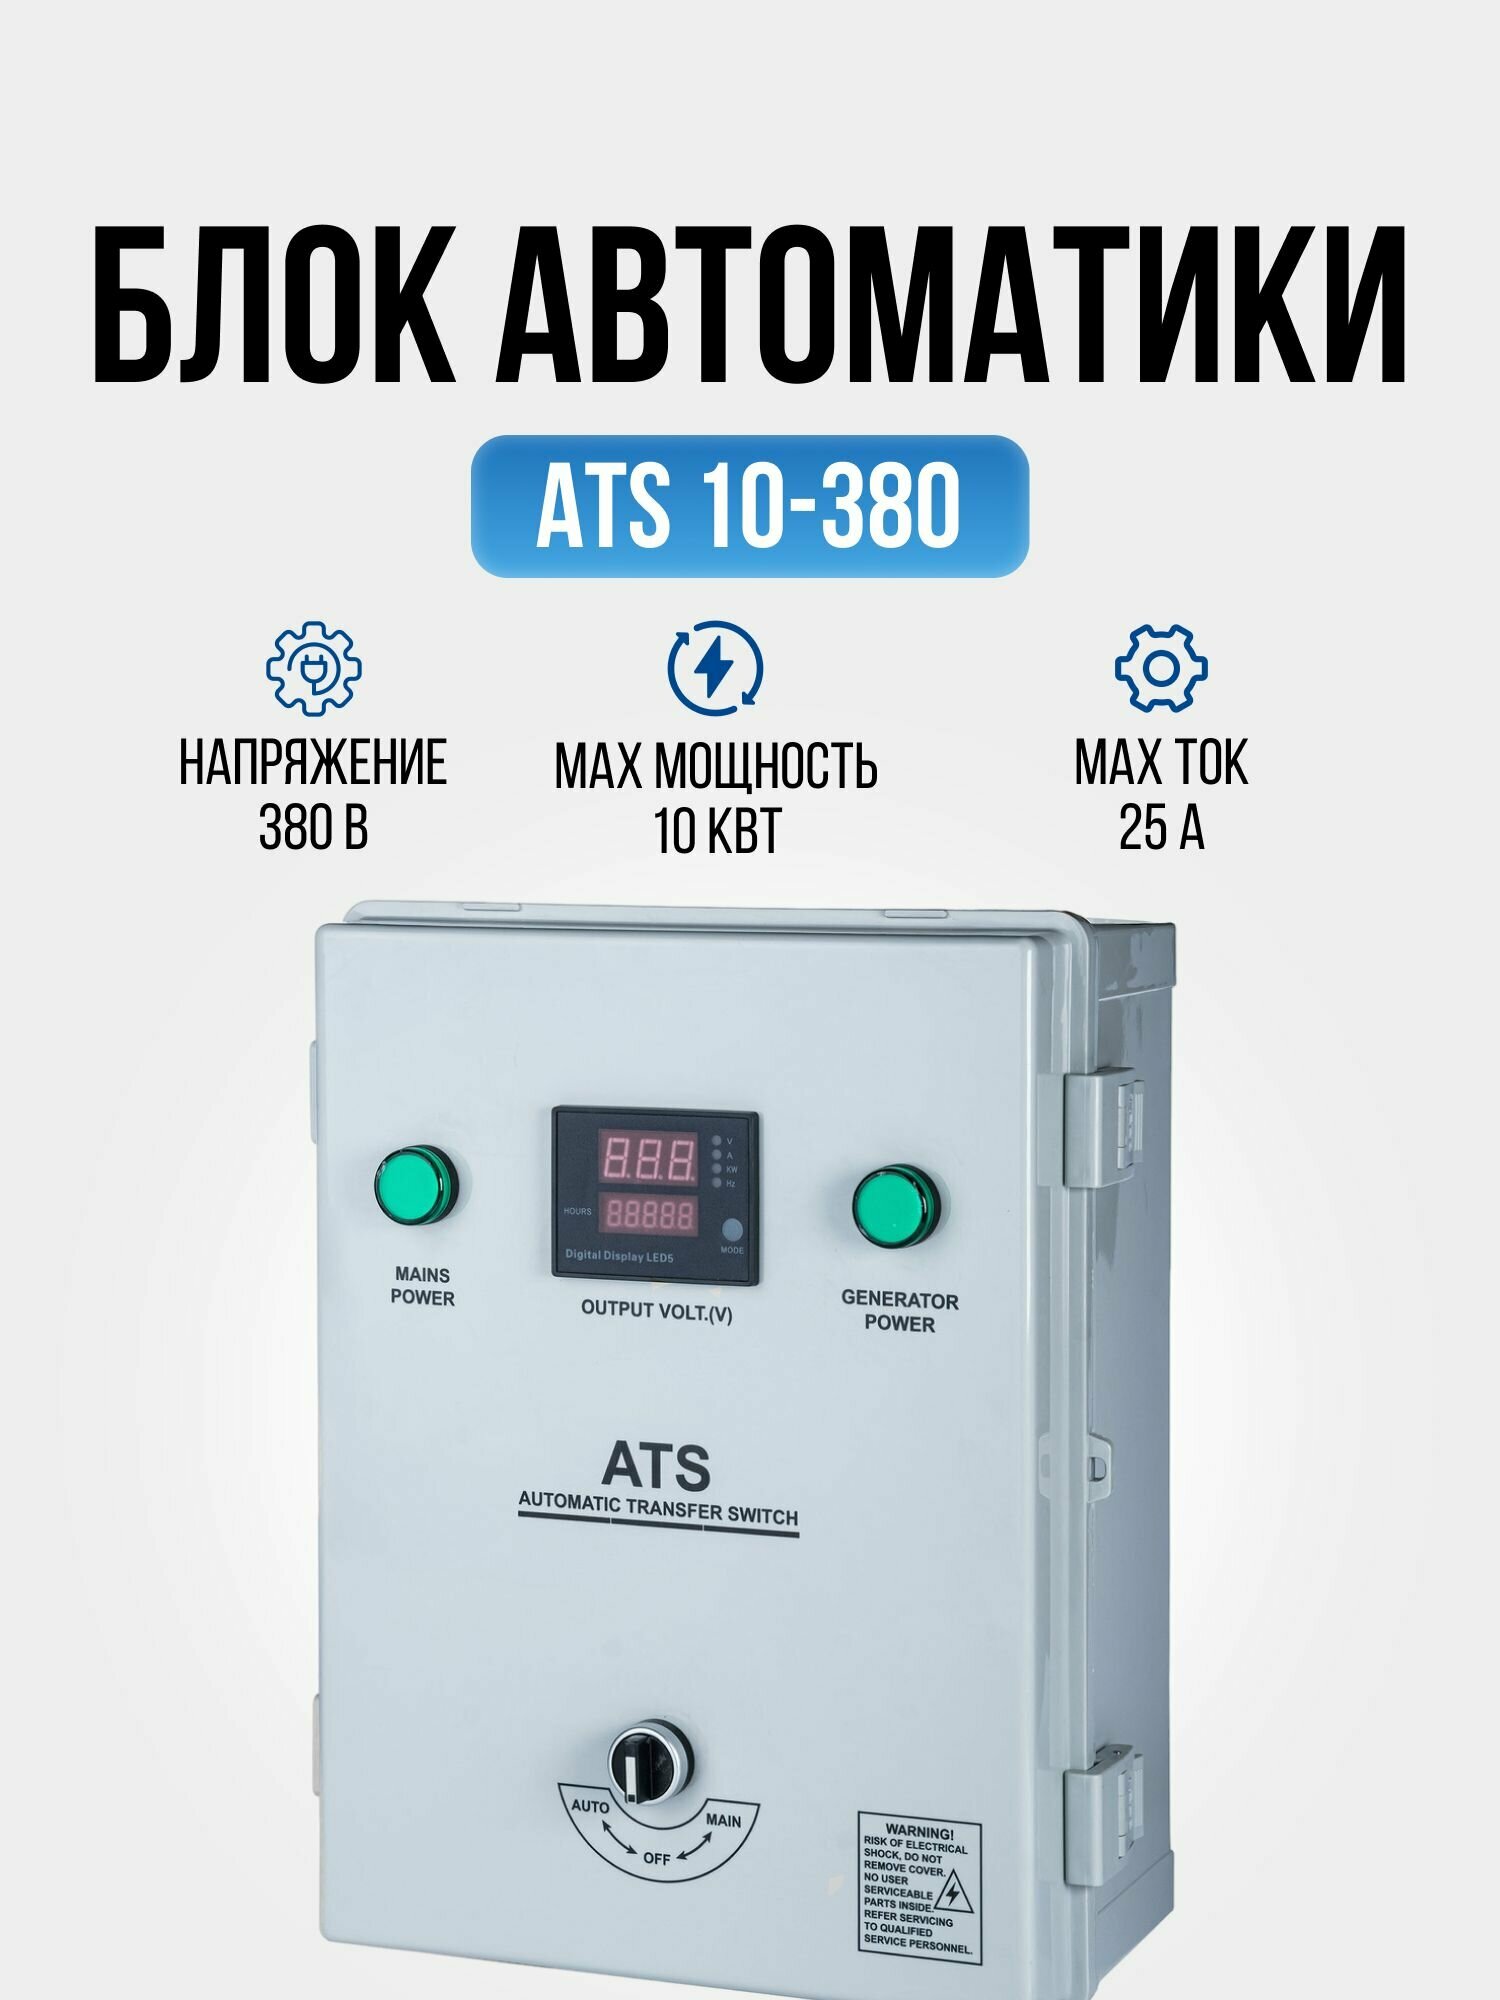 Блок автоматики Hyundai ATS 10-380, устройство автоматического запуска генератора